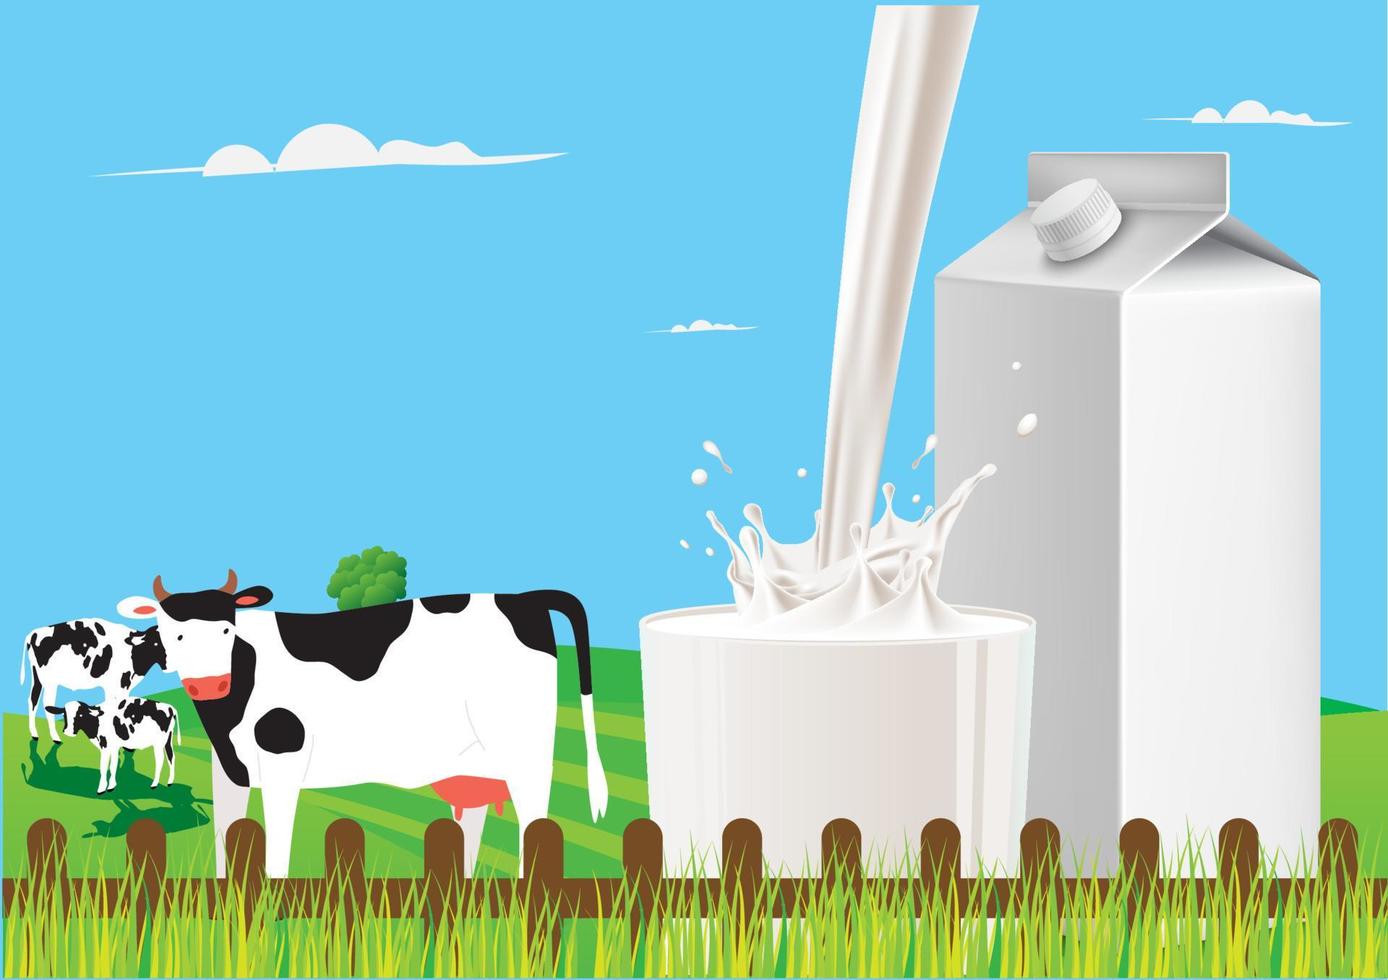 hälla mjölk i glaset mitt i den vackra naturen med gräsmarker och mjölkkor. platt stil tecknad illustration vektor